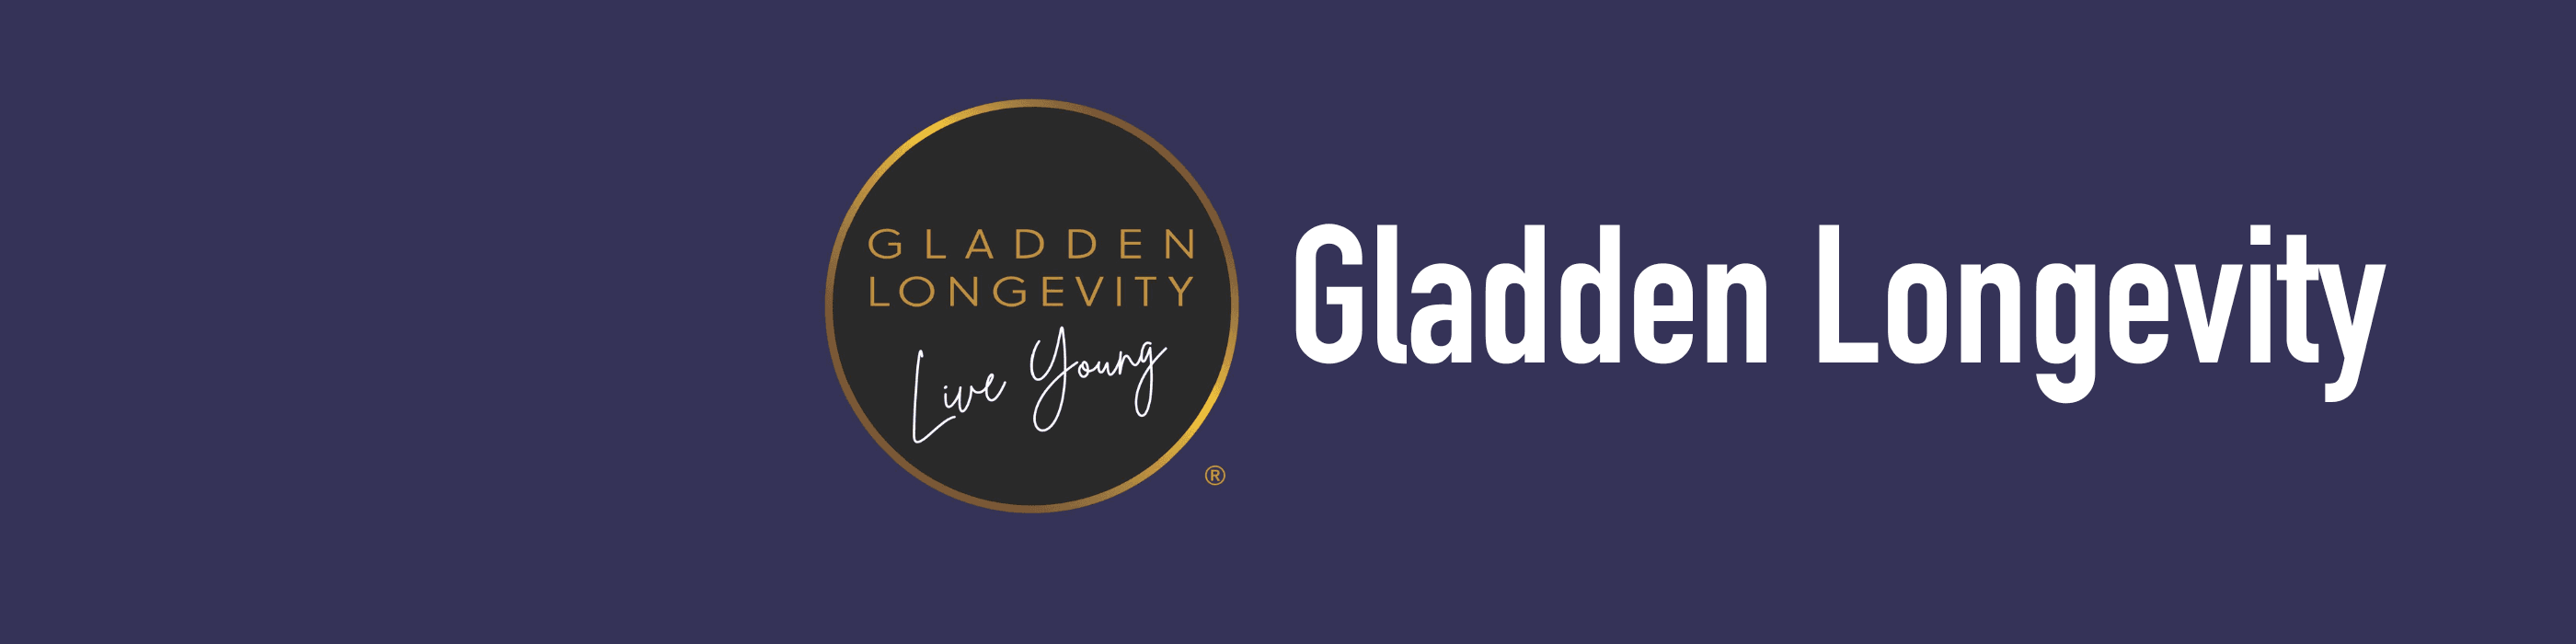 GladdenLongevity banner